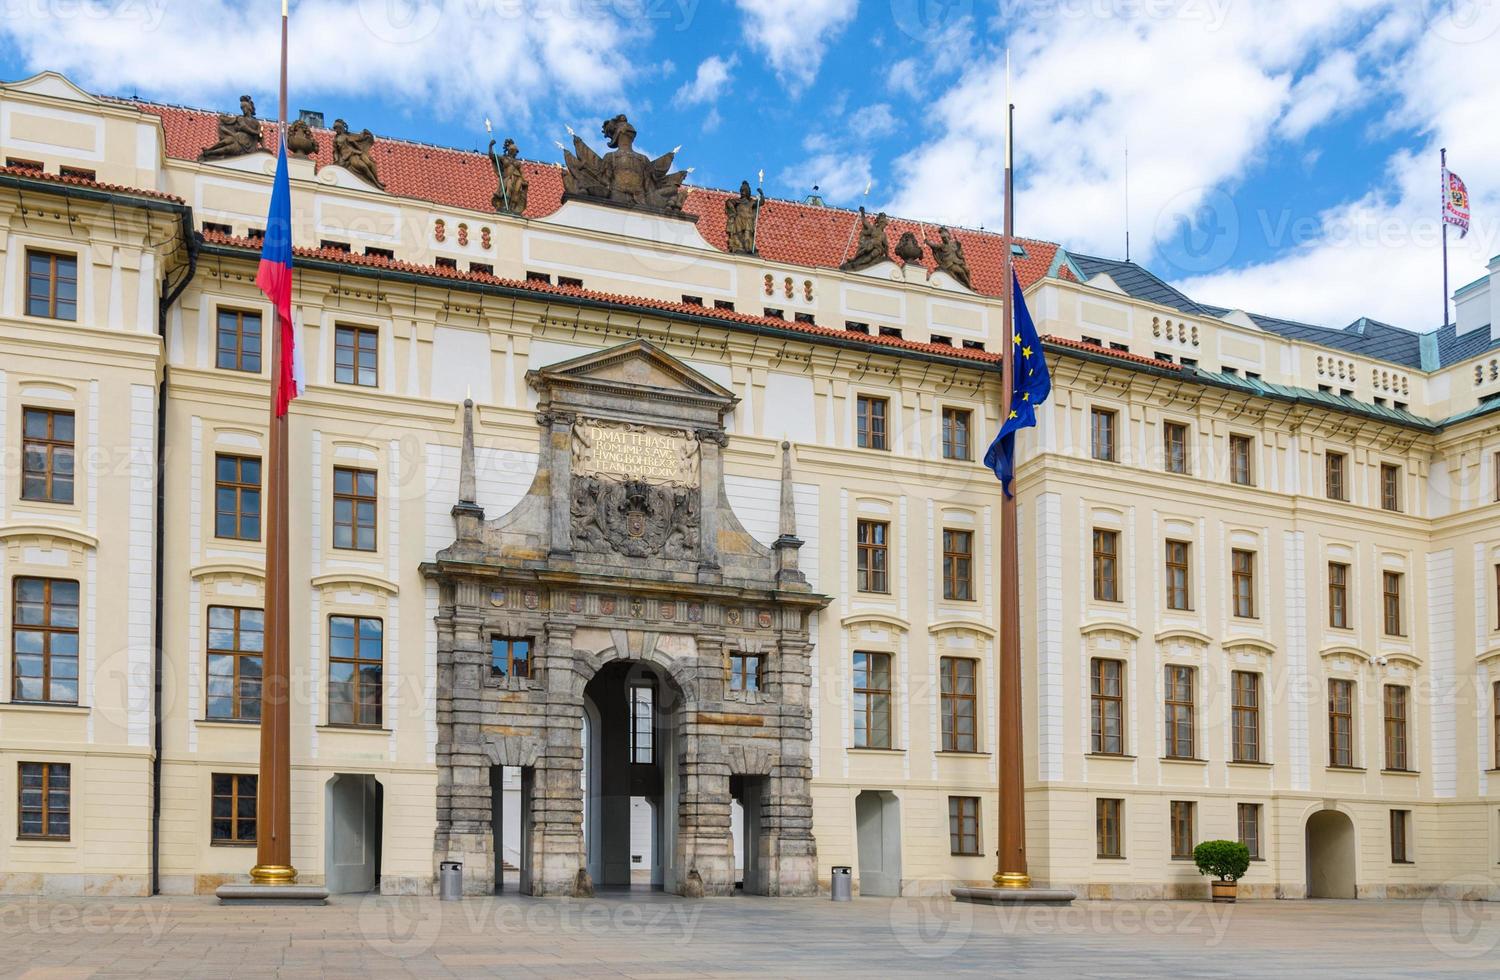 matthias porten till det nya kungliga palatset novy kralovsky palac och eu och tjeckiska flaggor vid flaggstången foto